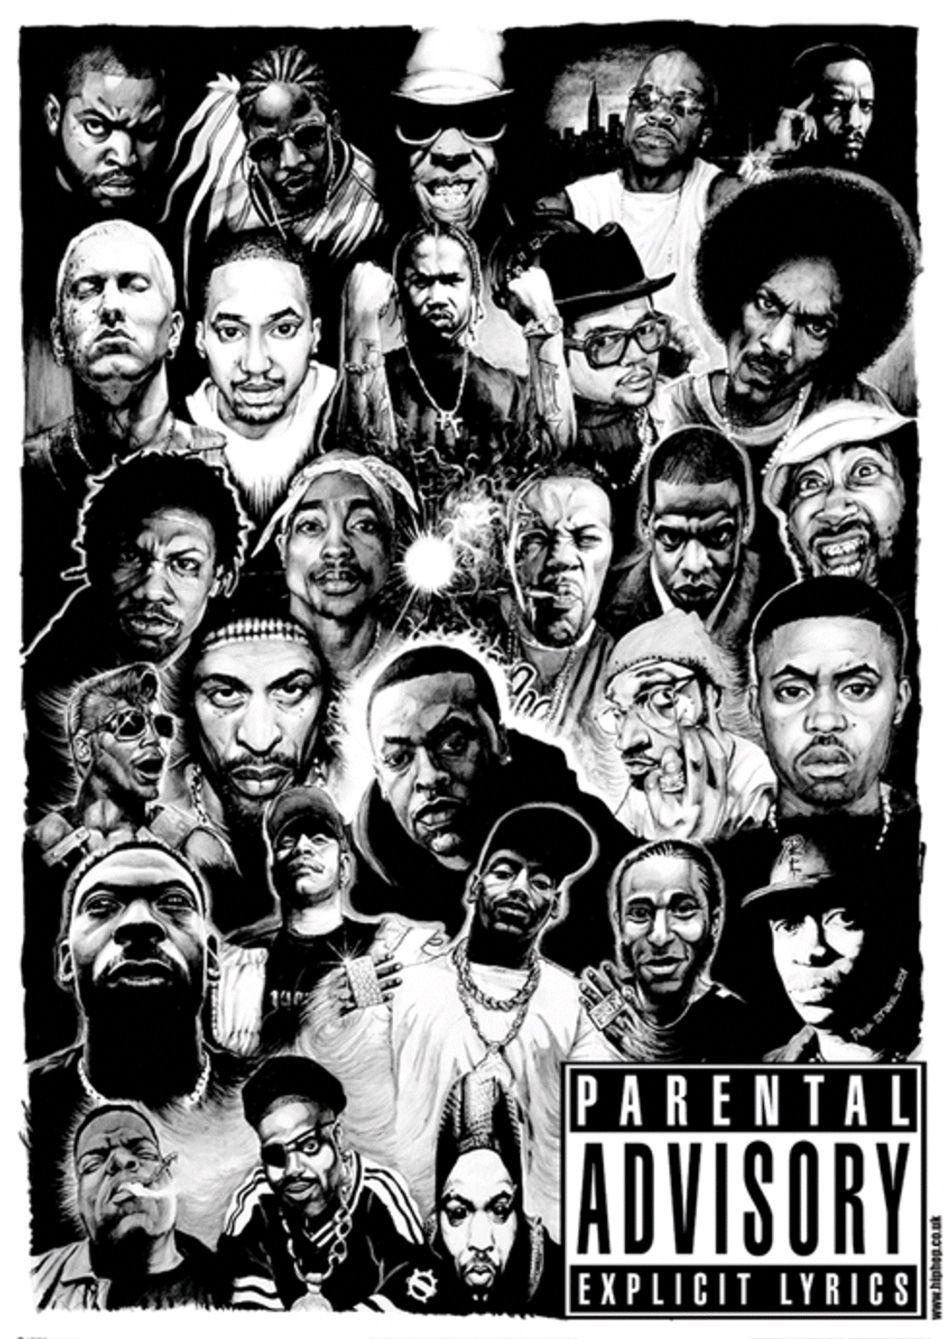 West Coast Hip Hop Wallpaper. Wallpaper